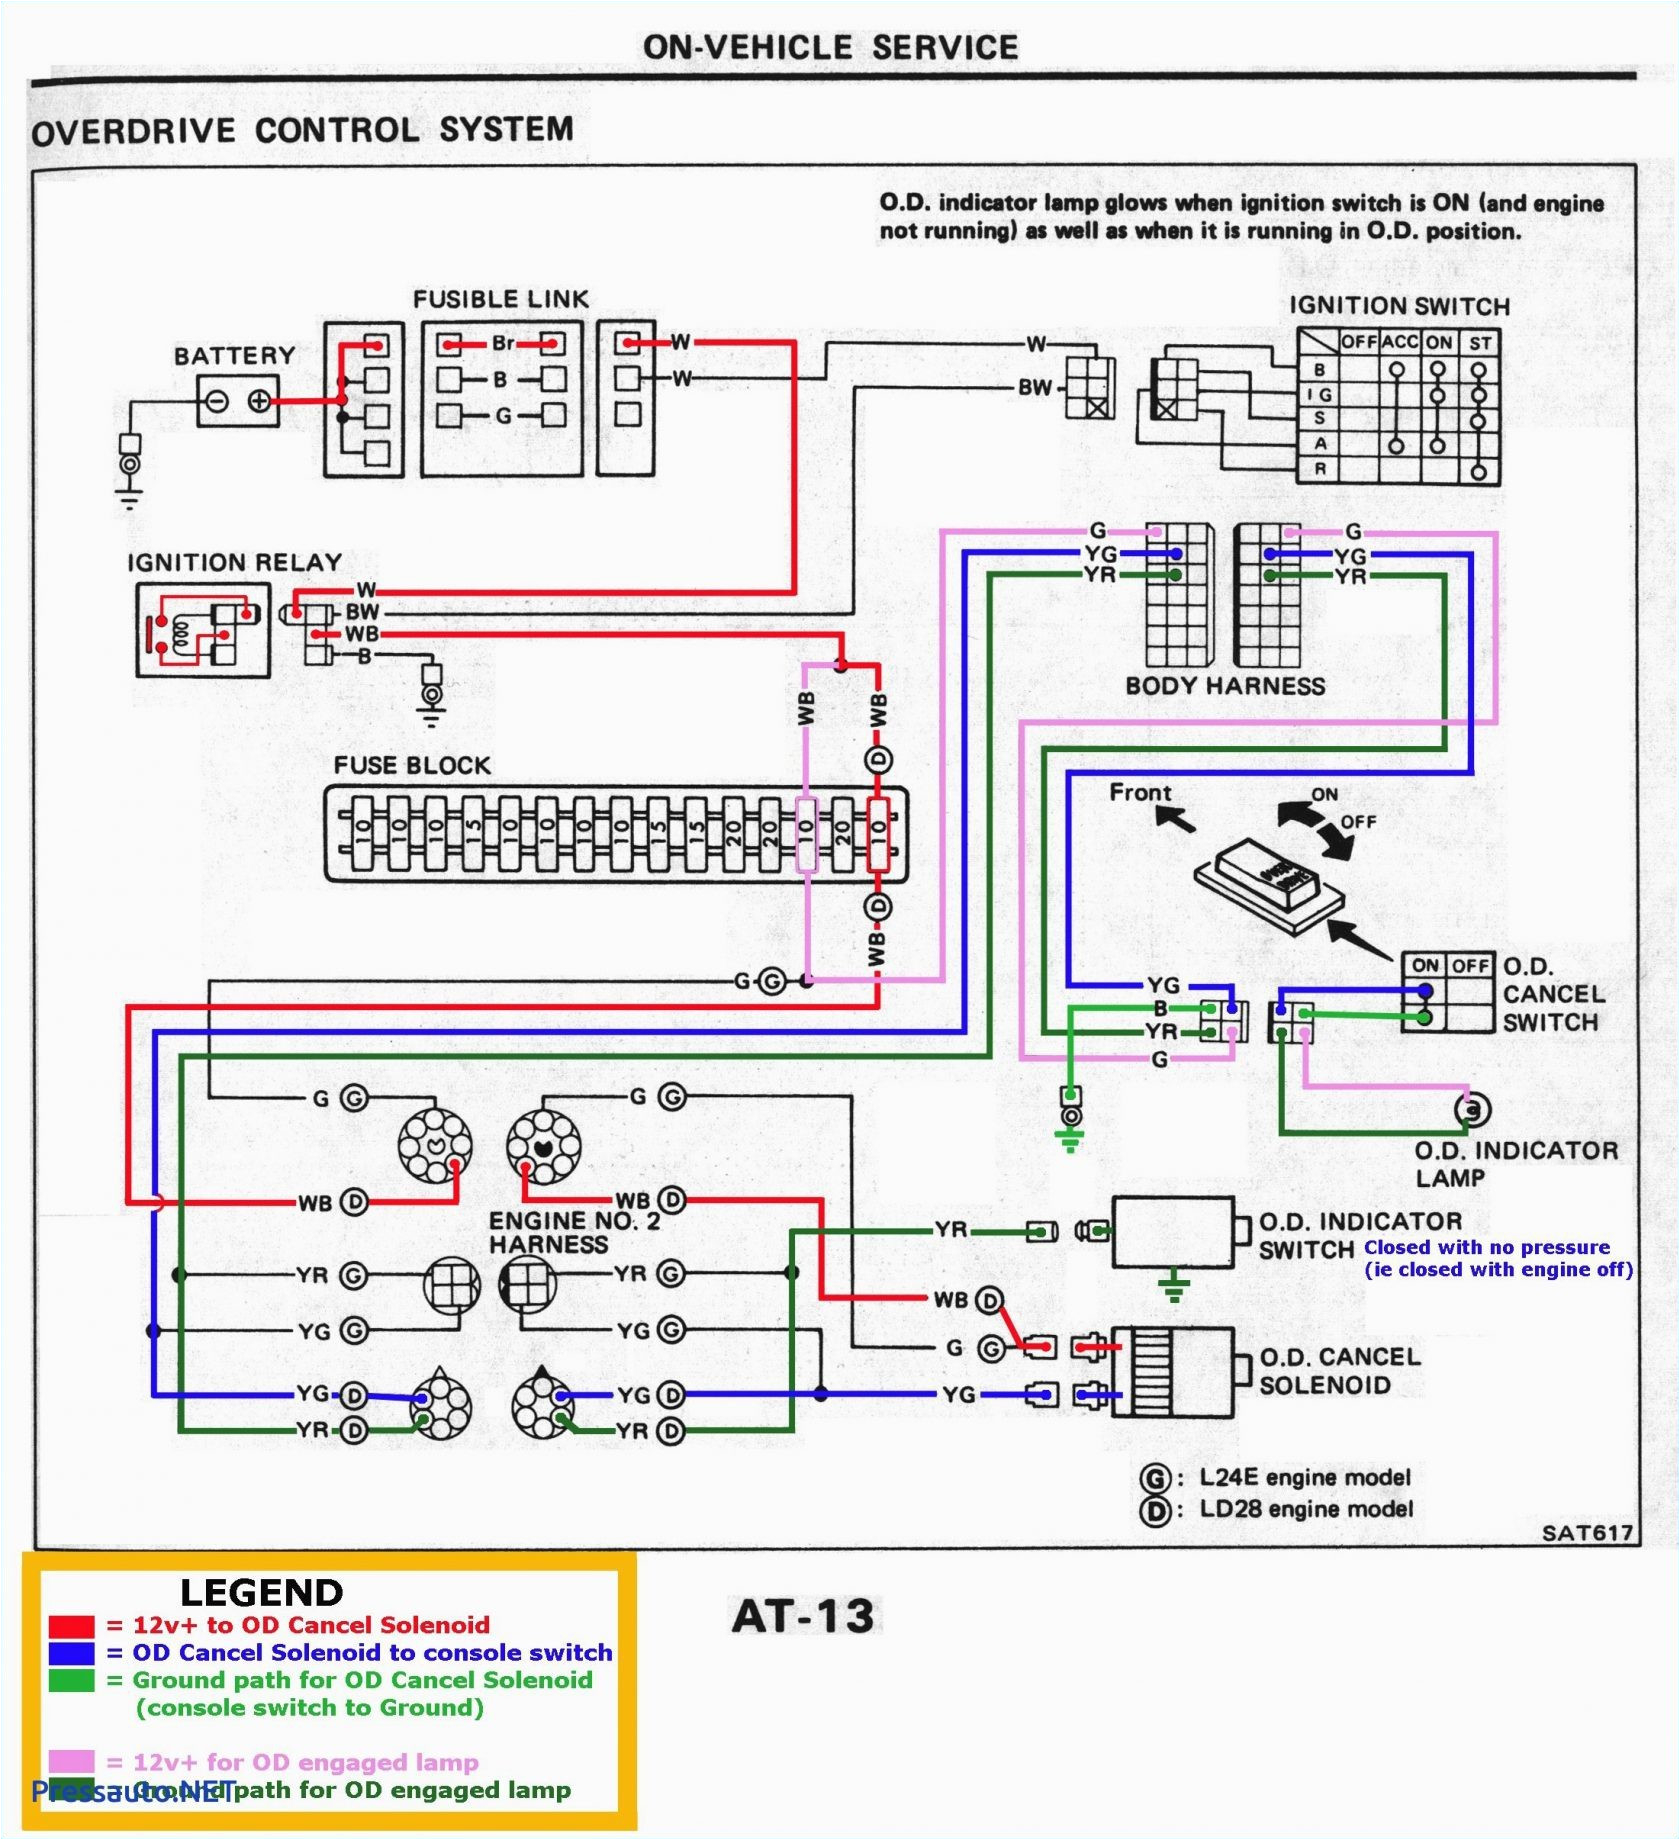 wiring diagram also 2001 chevy silverado fuel pump likewise 1998 wiring diagram 2005 chevy silverado 1500 fuel system likewise photos